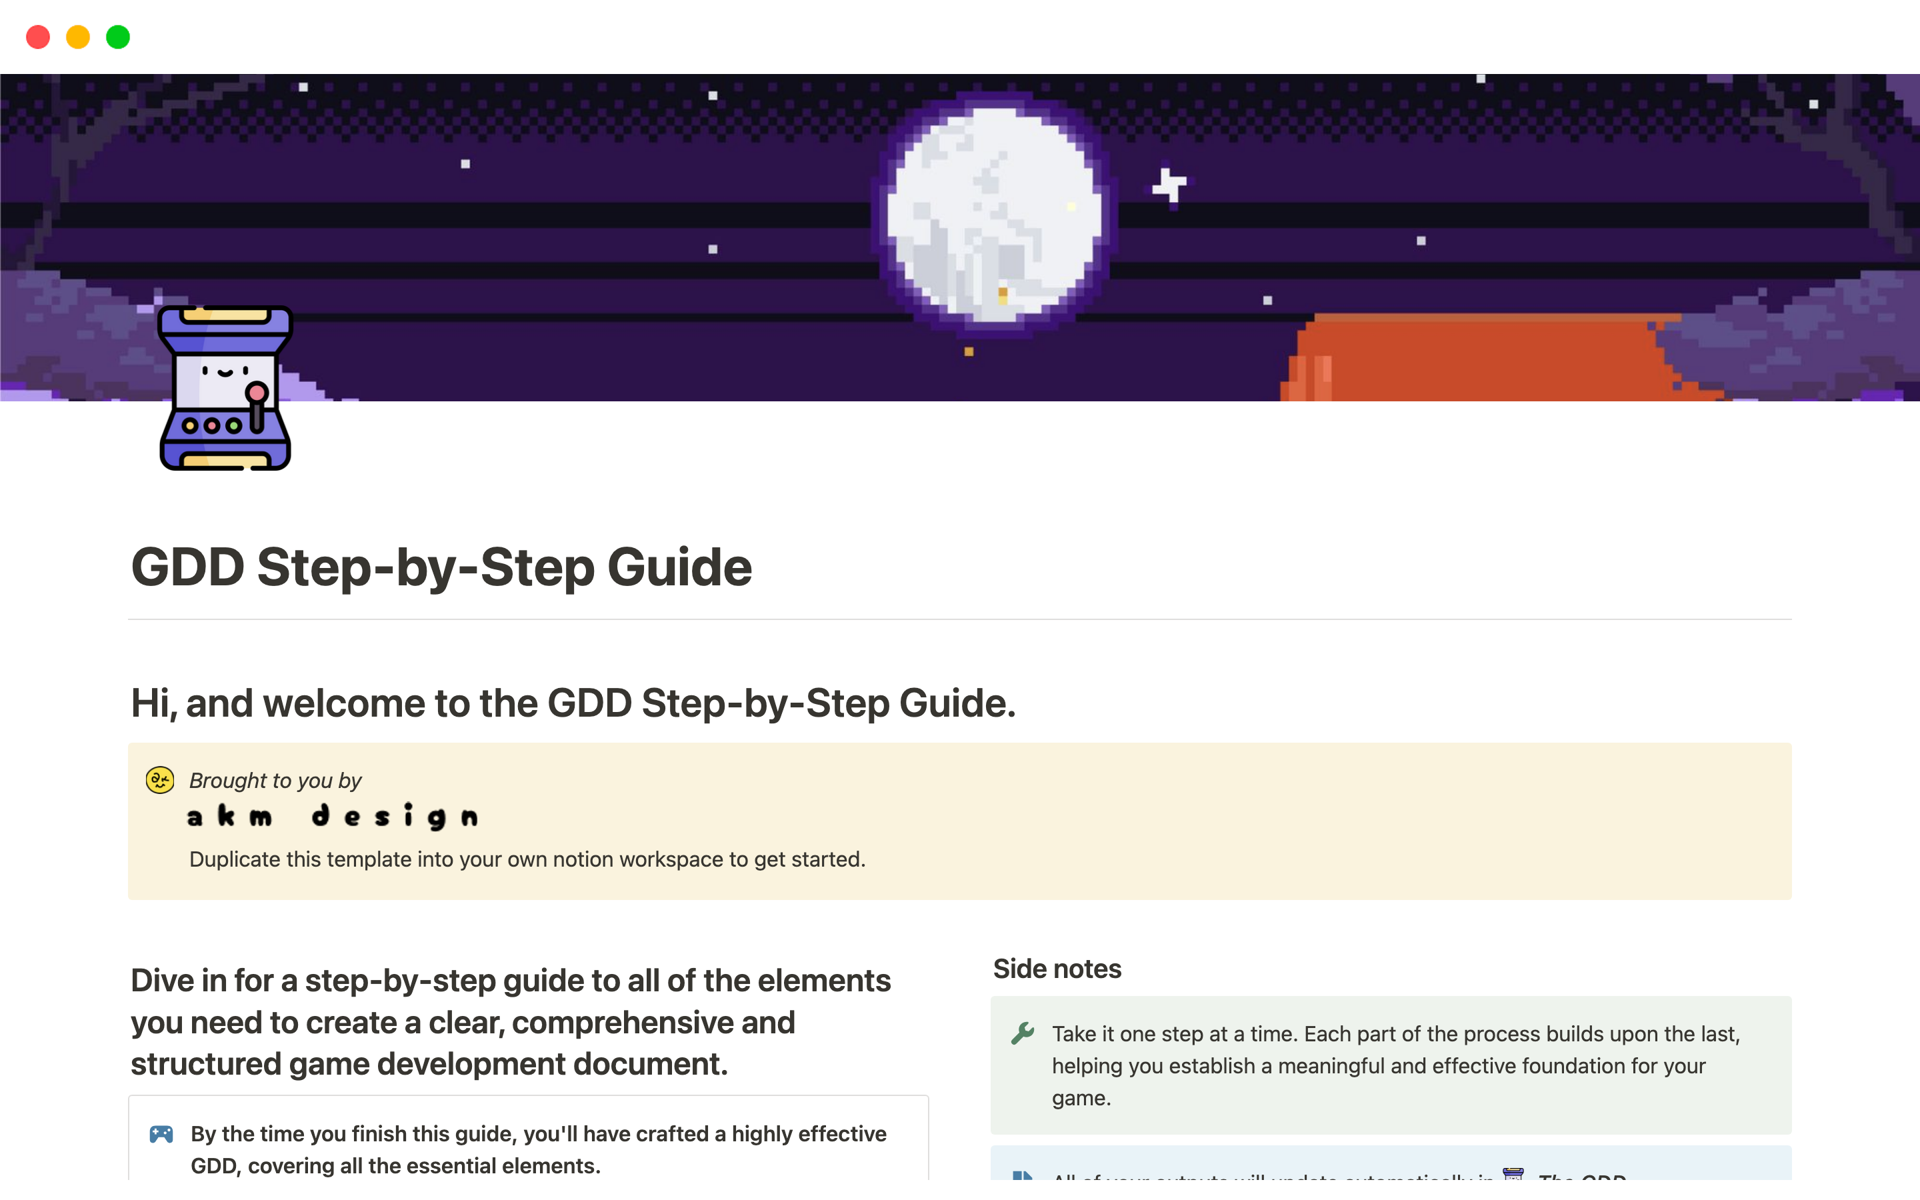 Uma prévia do modelo para GDD Step-by-Step Guide